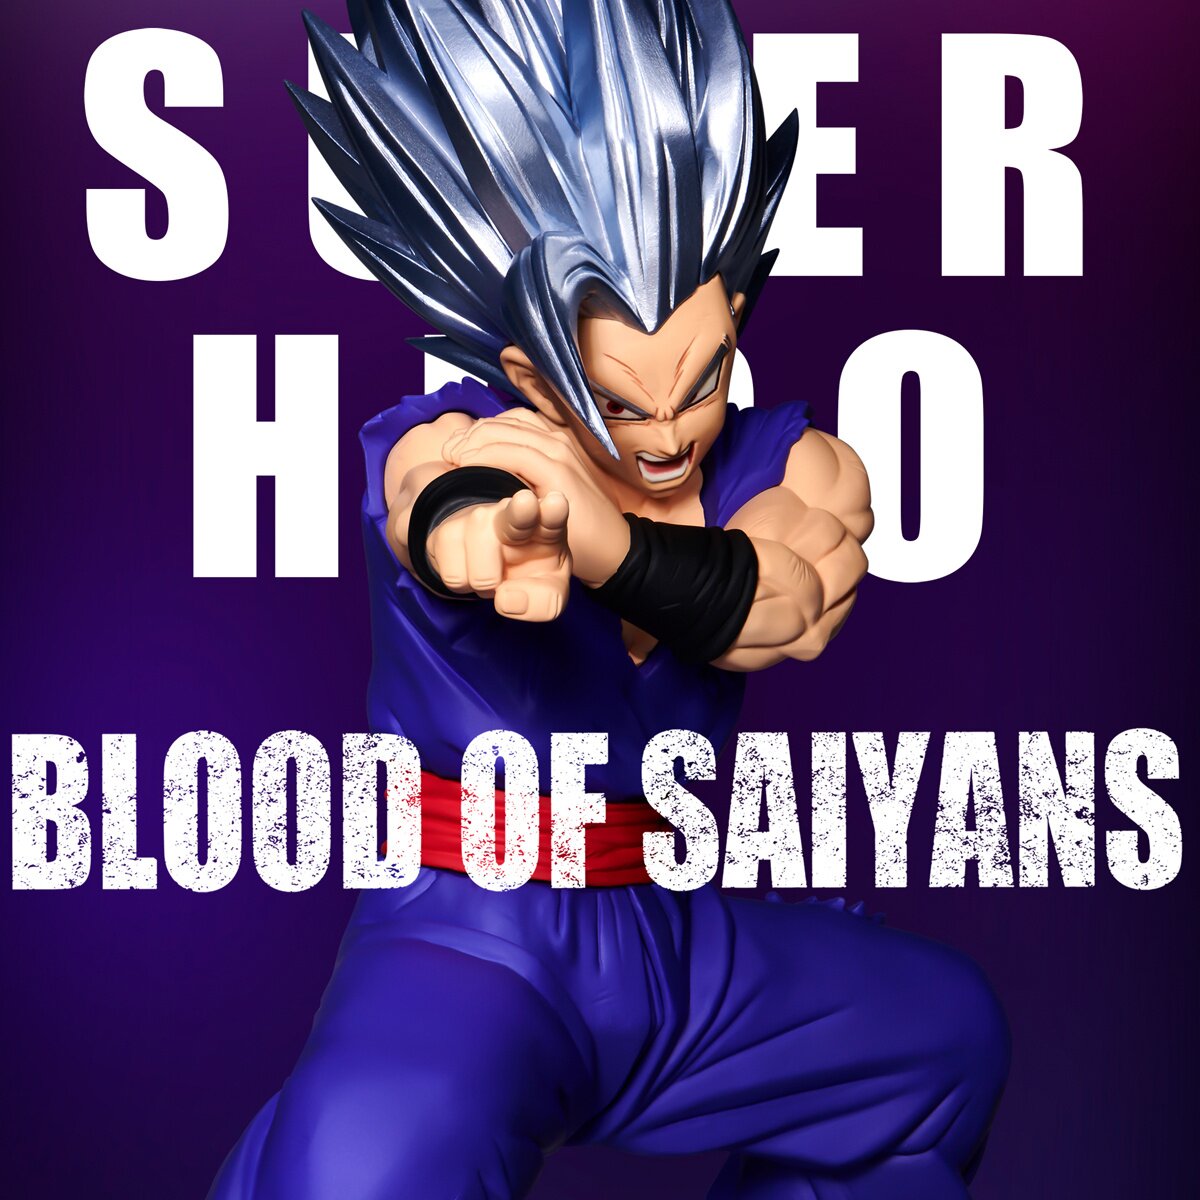 Figure Dragon Ball GT - Blood Of Saiyans Special V - Super